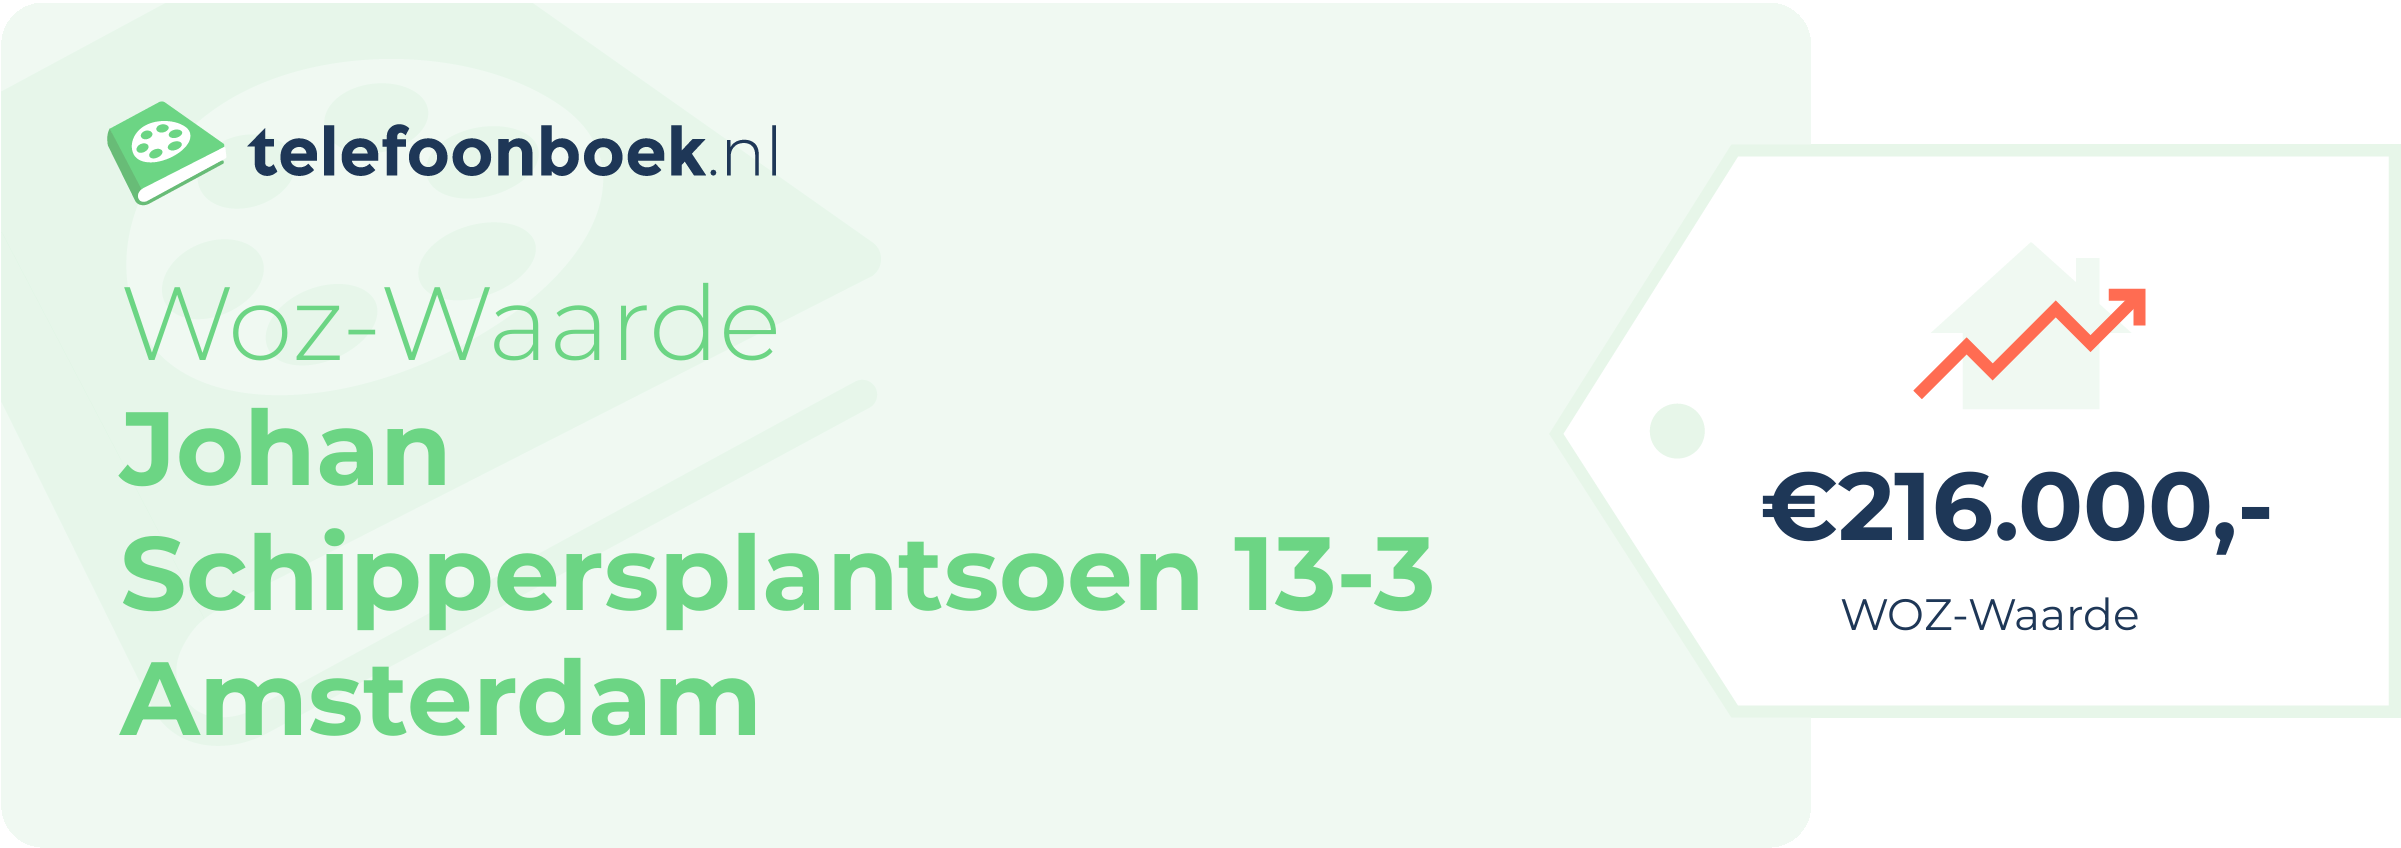 WOZ-waarde Johan Schippersplantsoen 13-3 Amsterdam